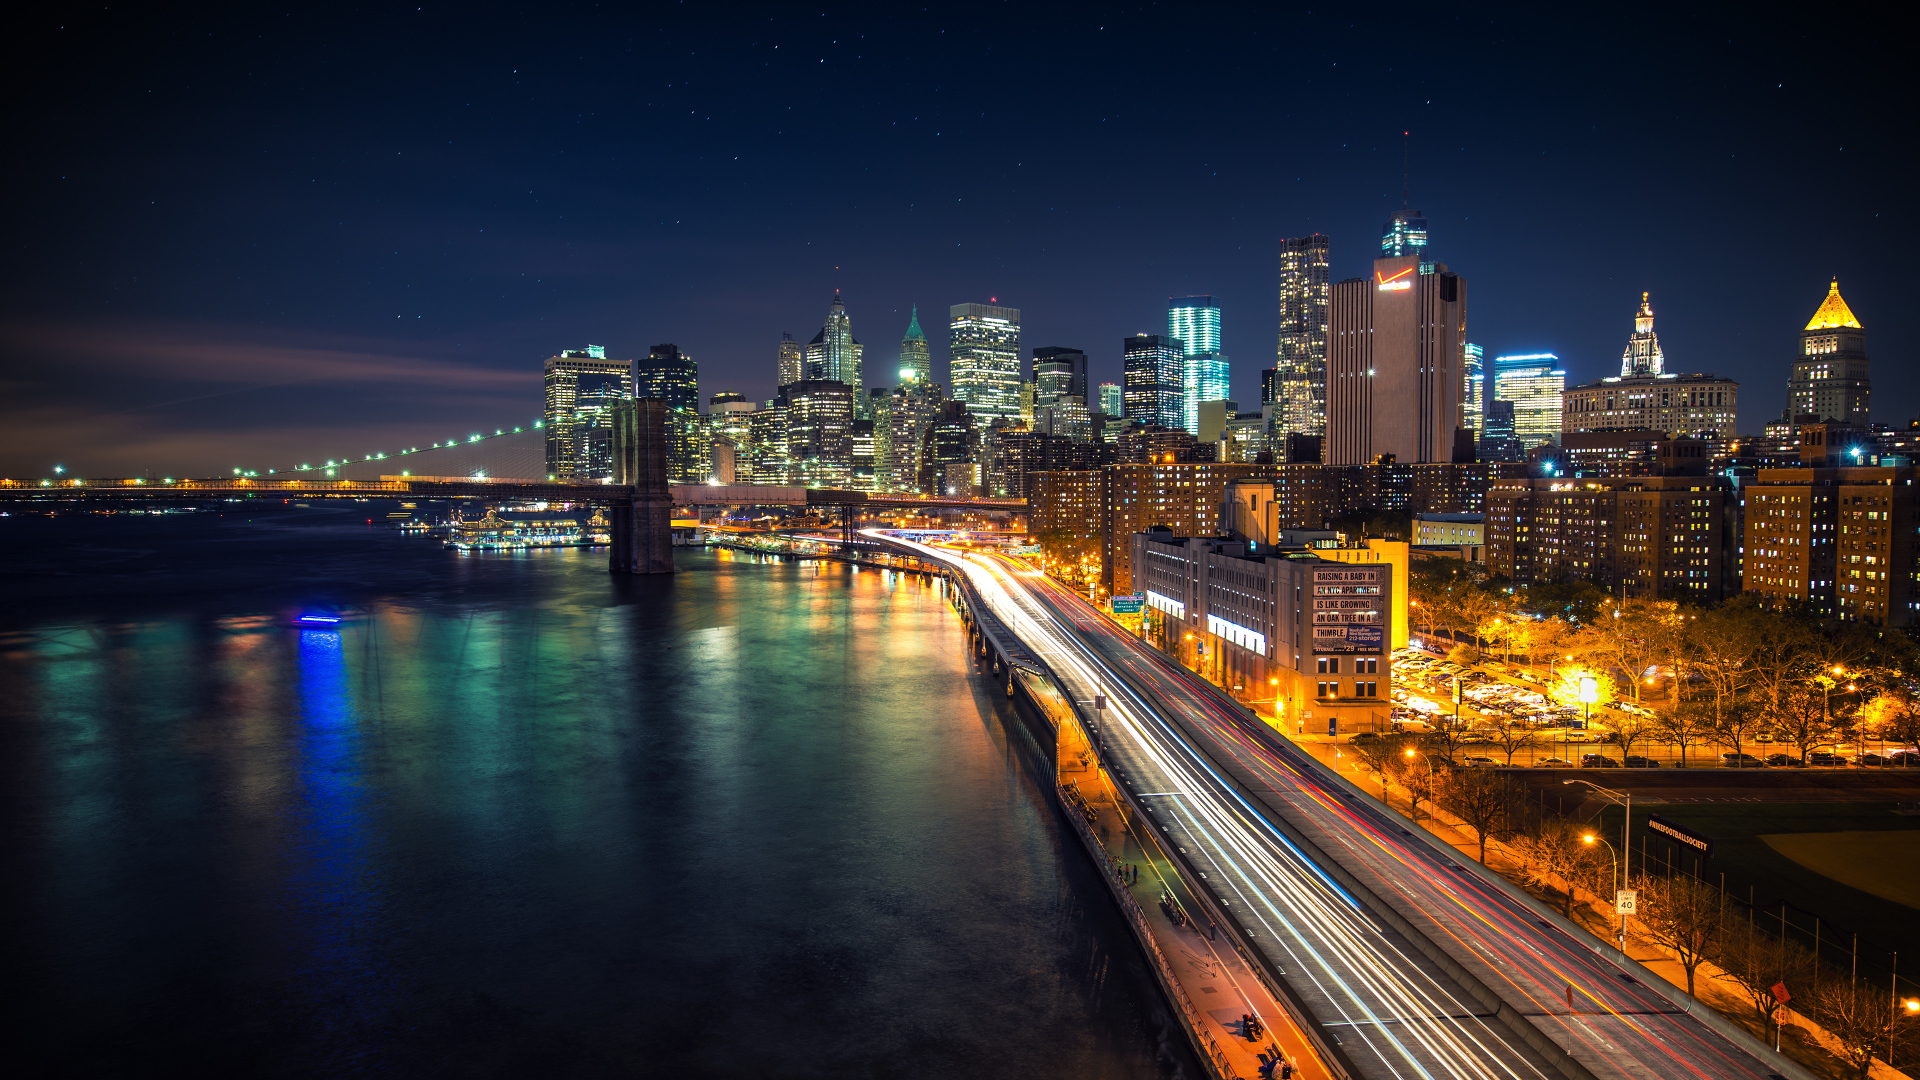 Stellar Night over Manhattan